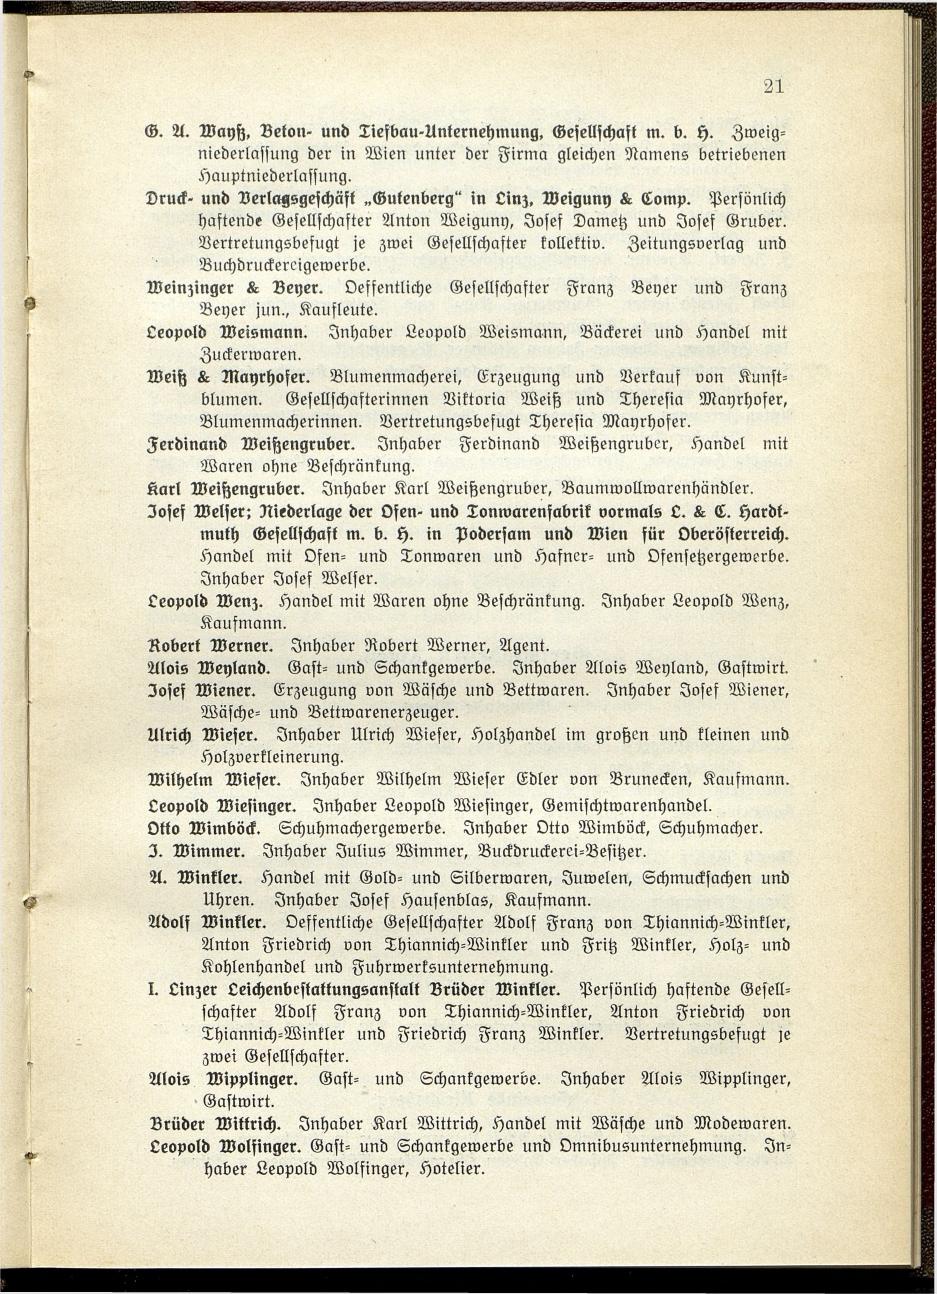 Verzeichnis der handelsgerichtlich protokollierten Firmen sowie der registrierten Erwerbs- und Wirtschafts-Genossenschaften in Oberösterreich 1914 - Seite 23